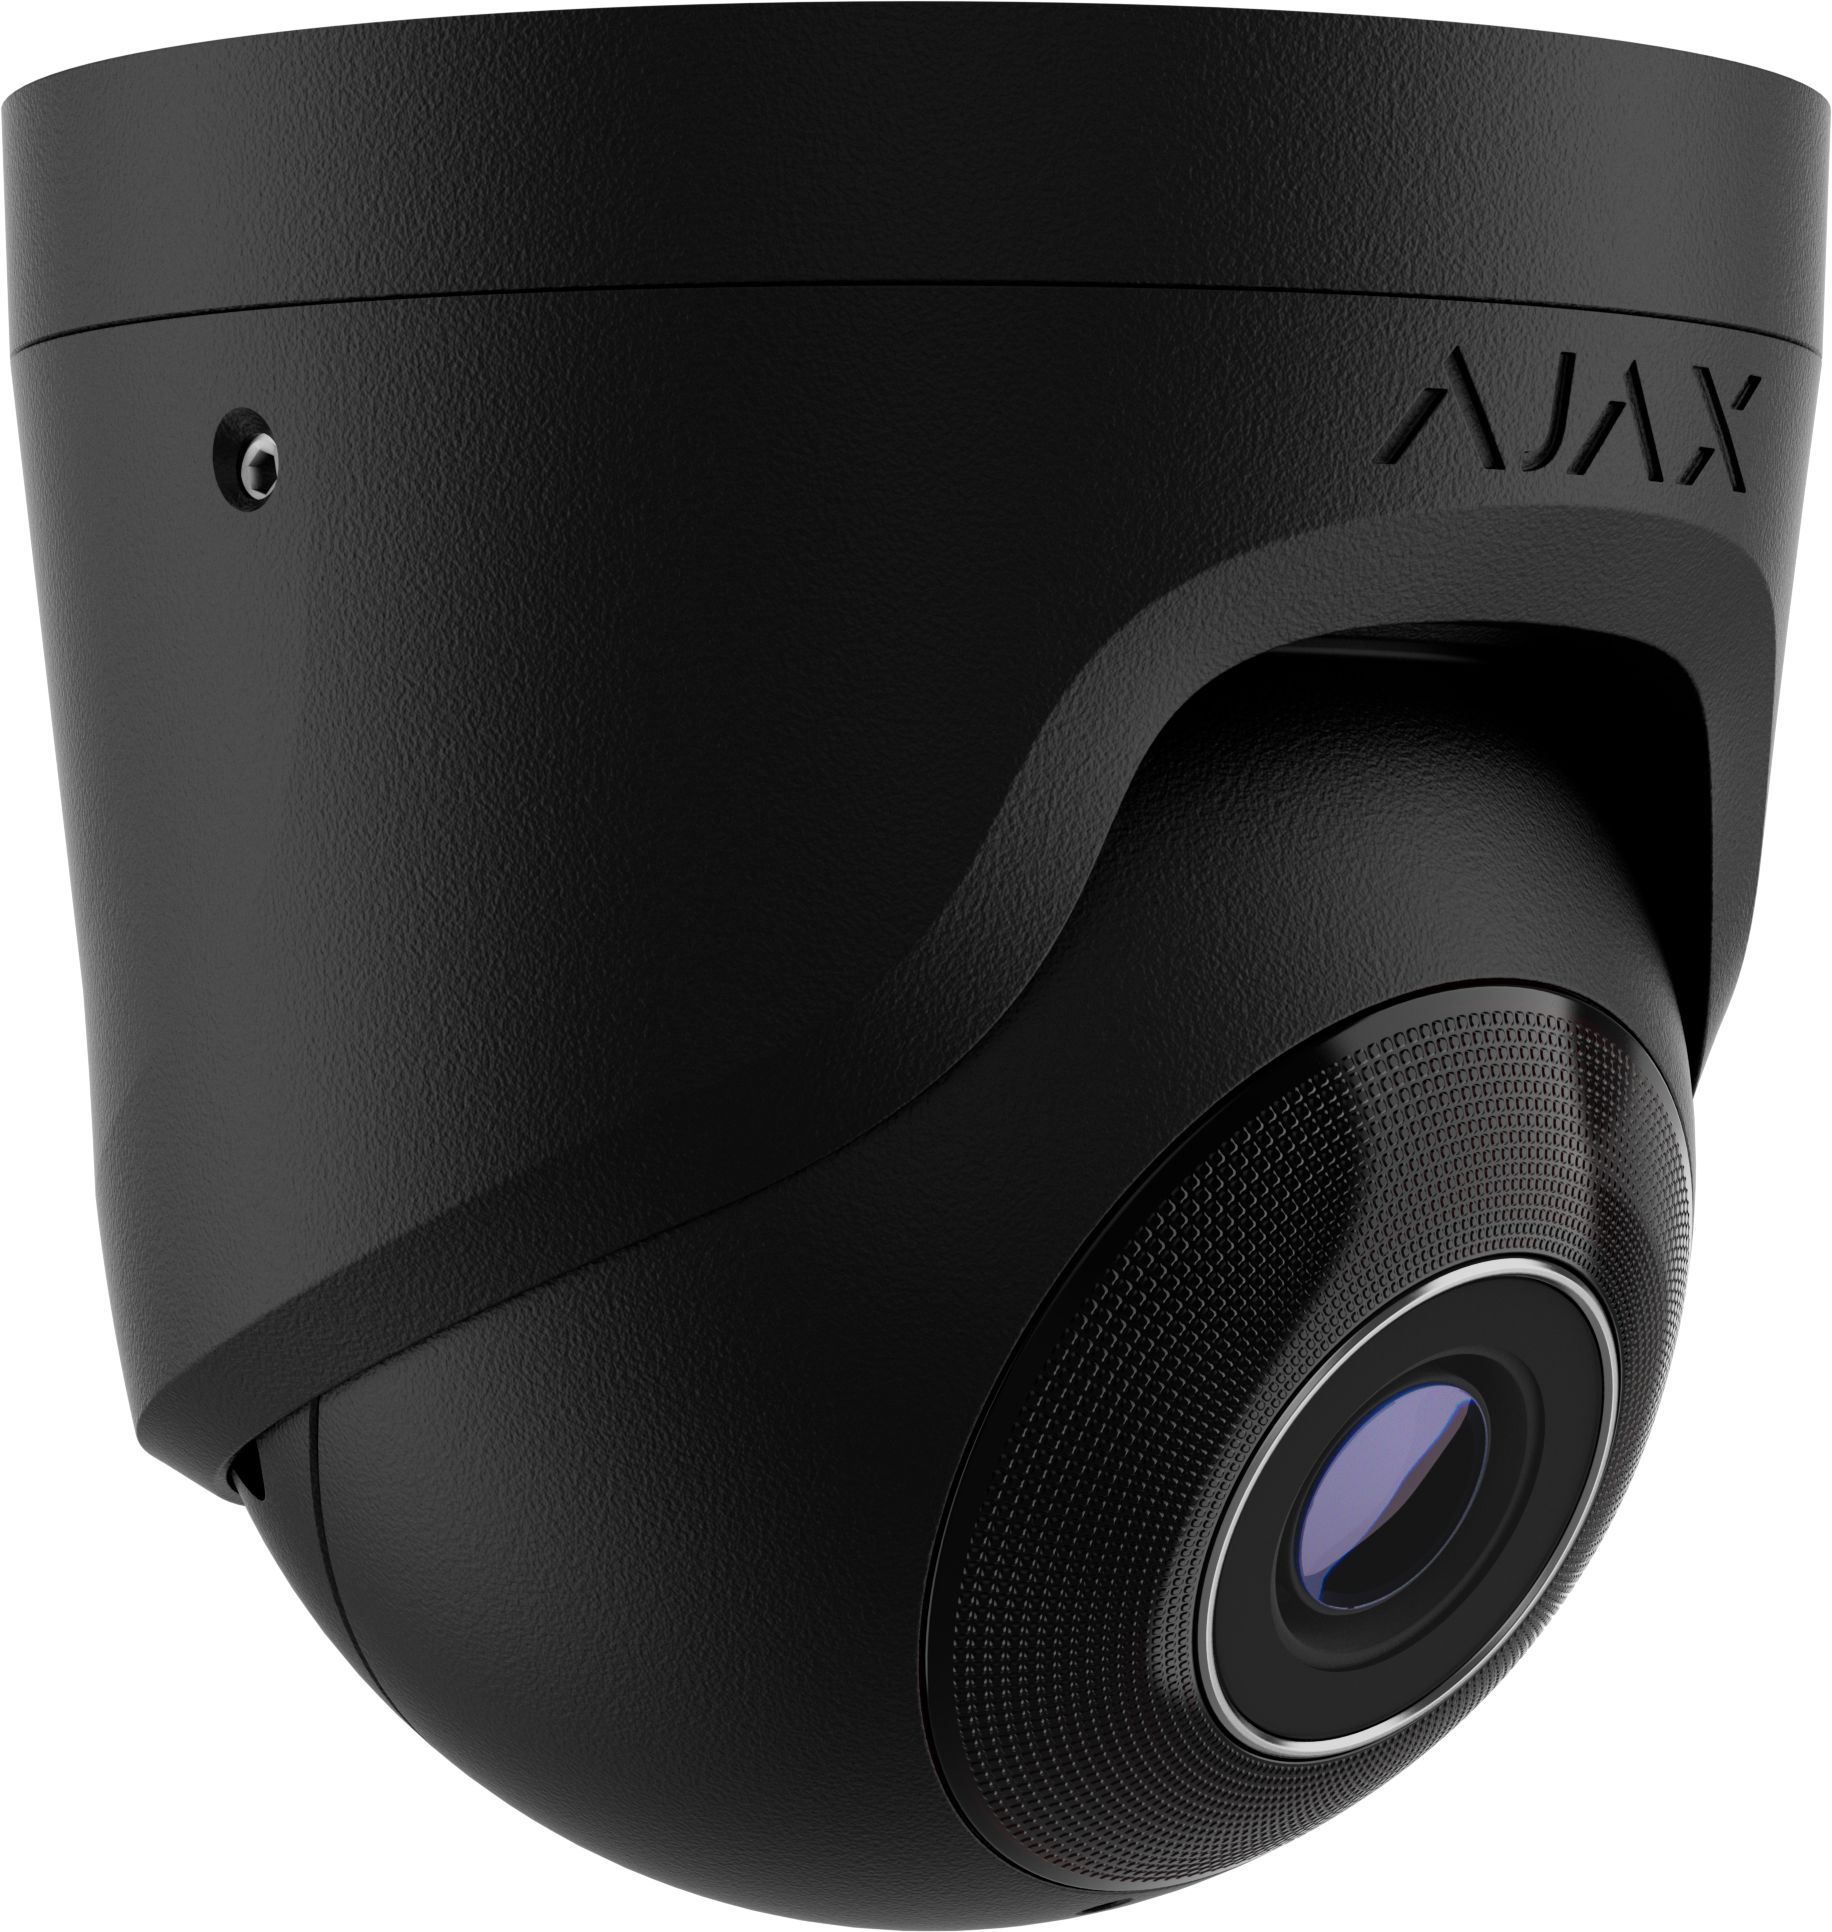 AJAX - TurretCam (5MP/4 mm) | Digital Key World